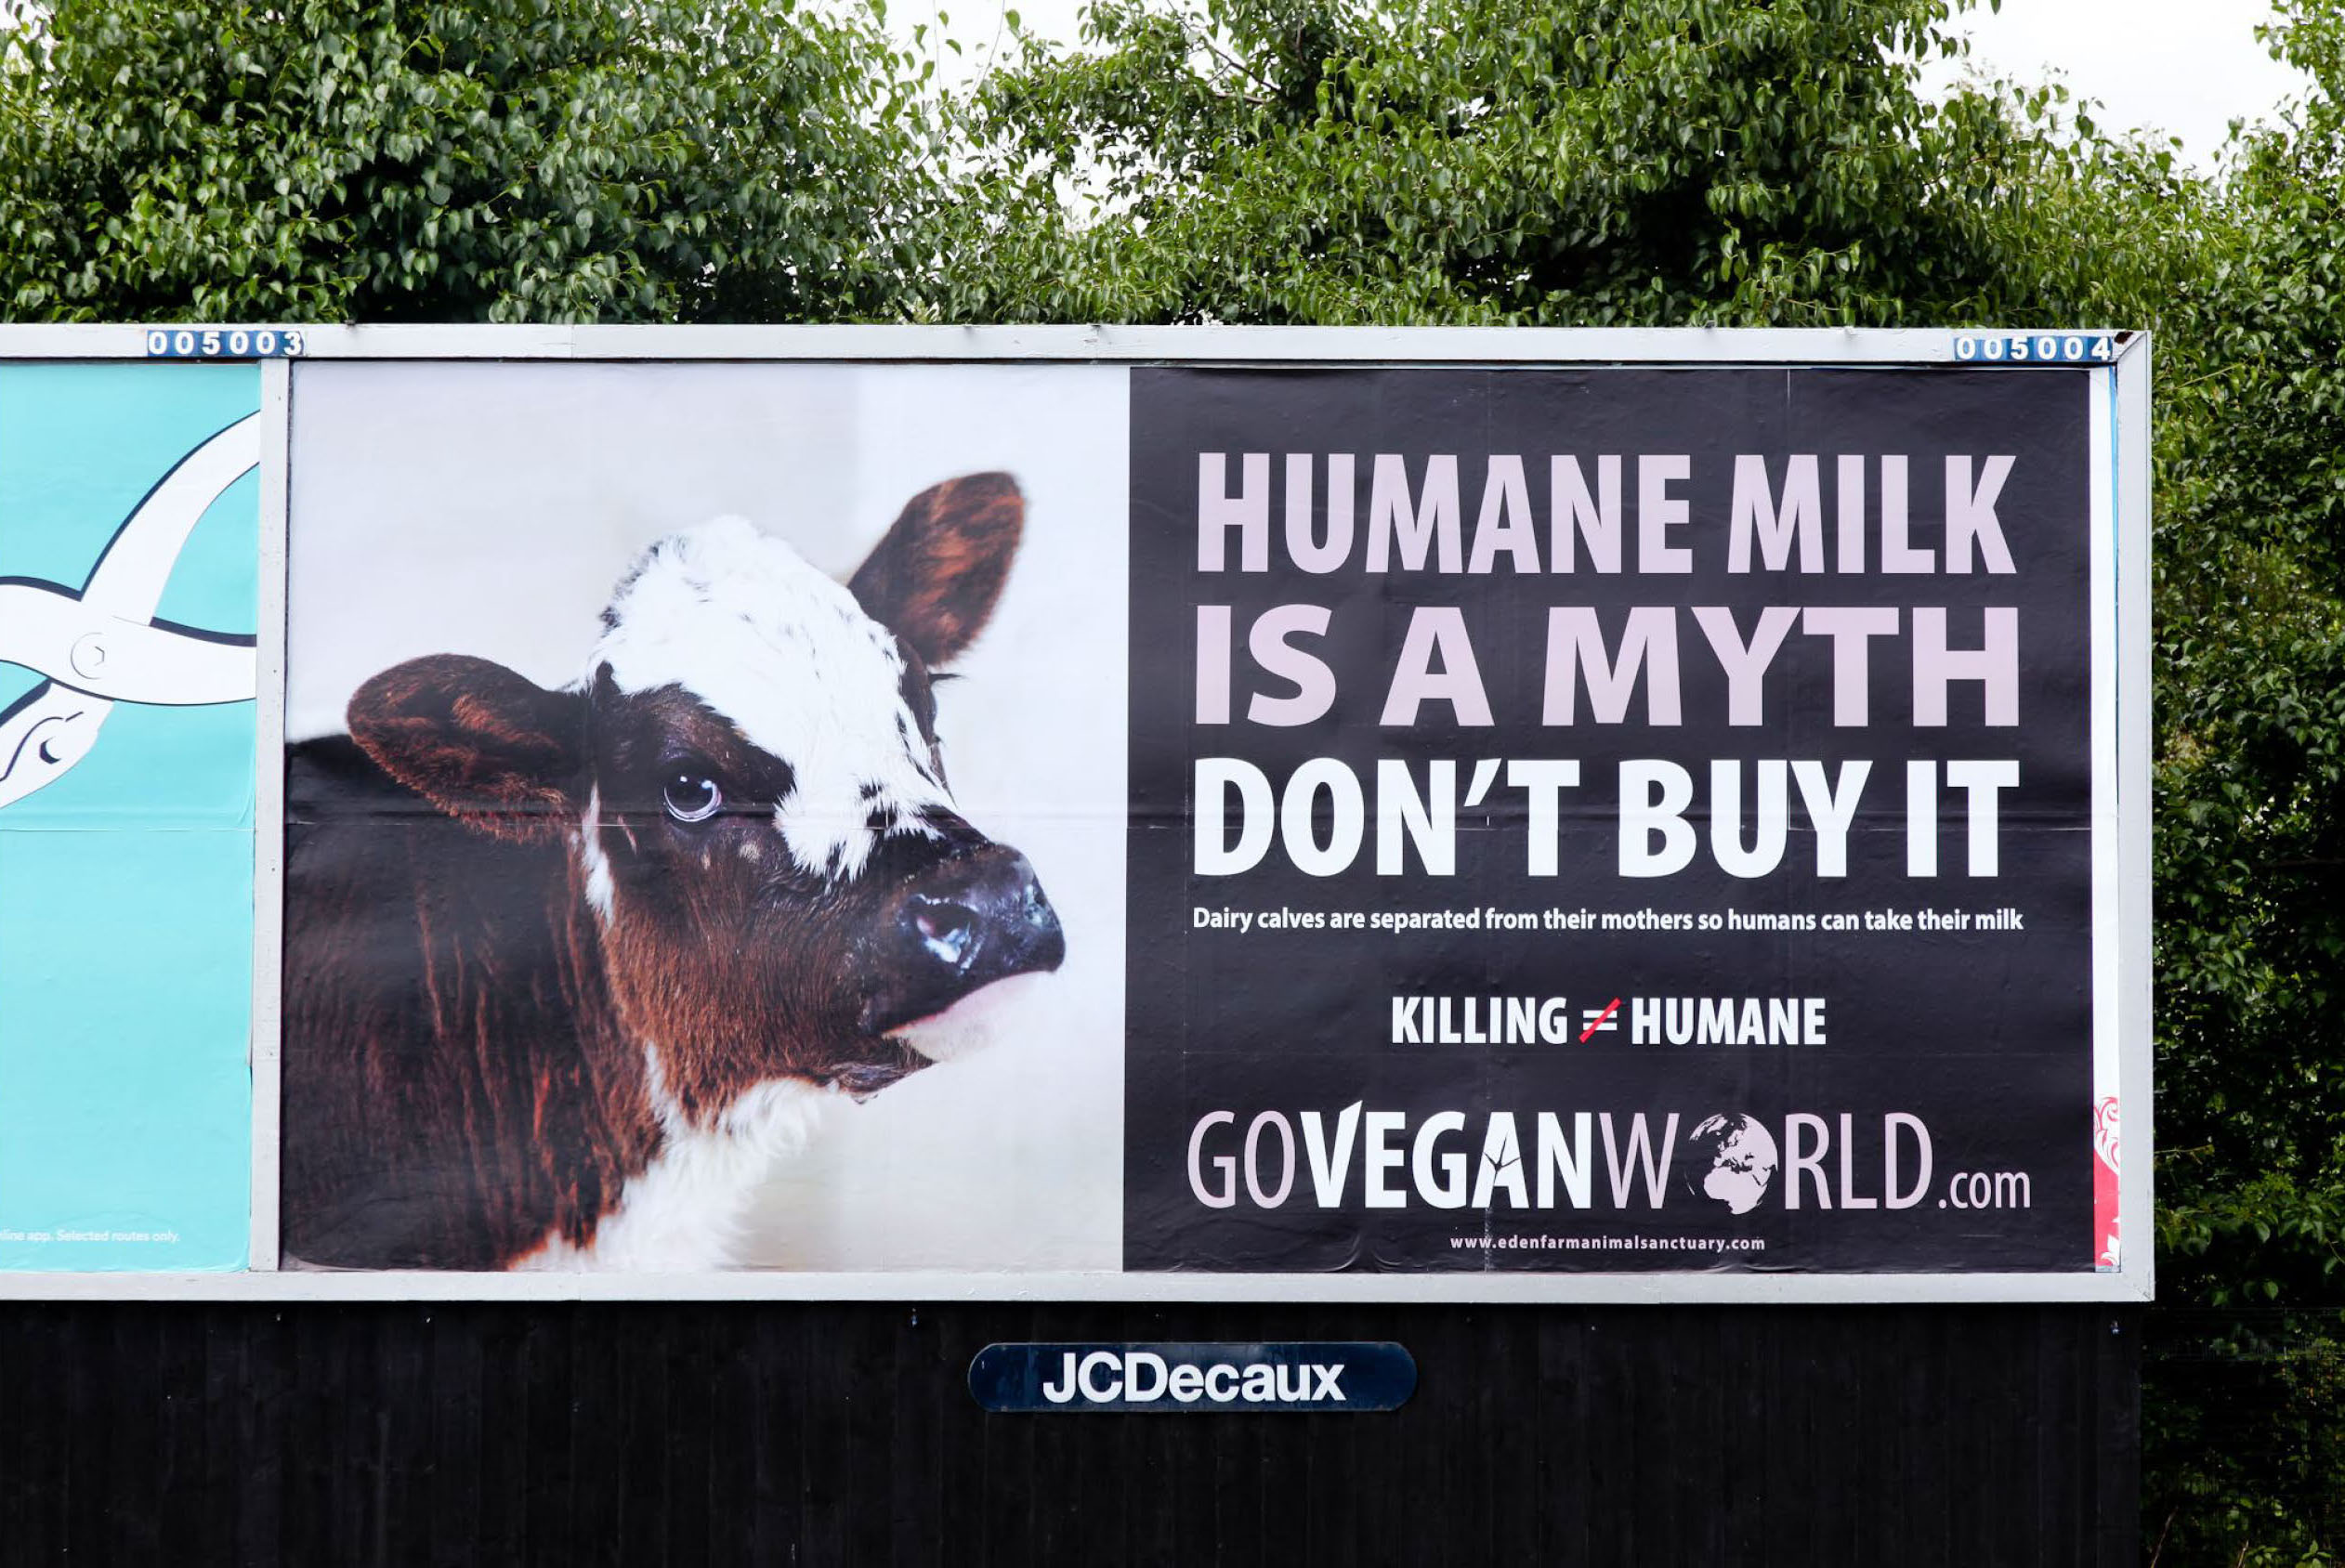 Humane Milk is a myth - Billboard in Newcastle by Go Vegan World